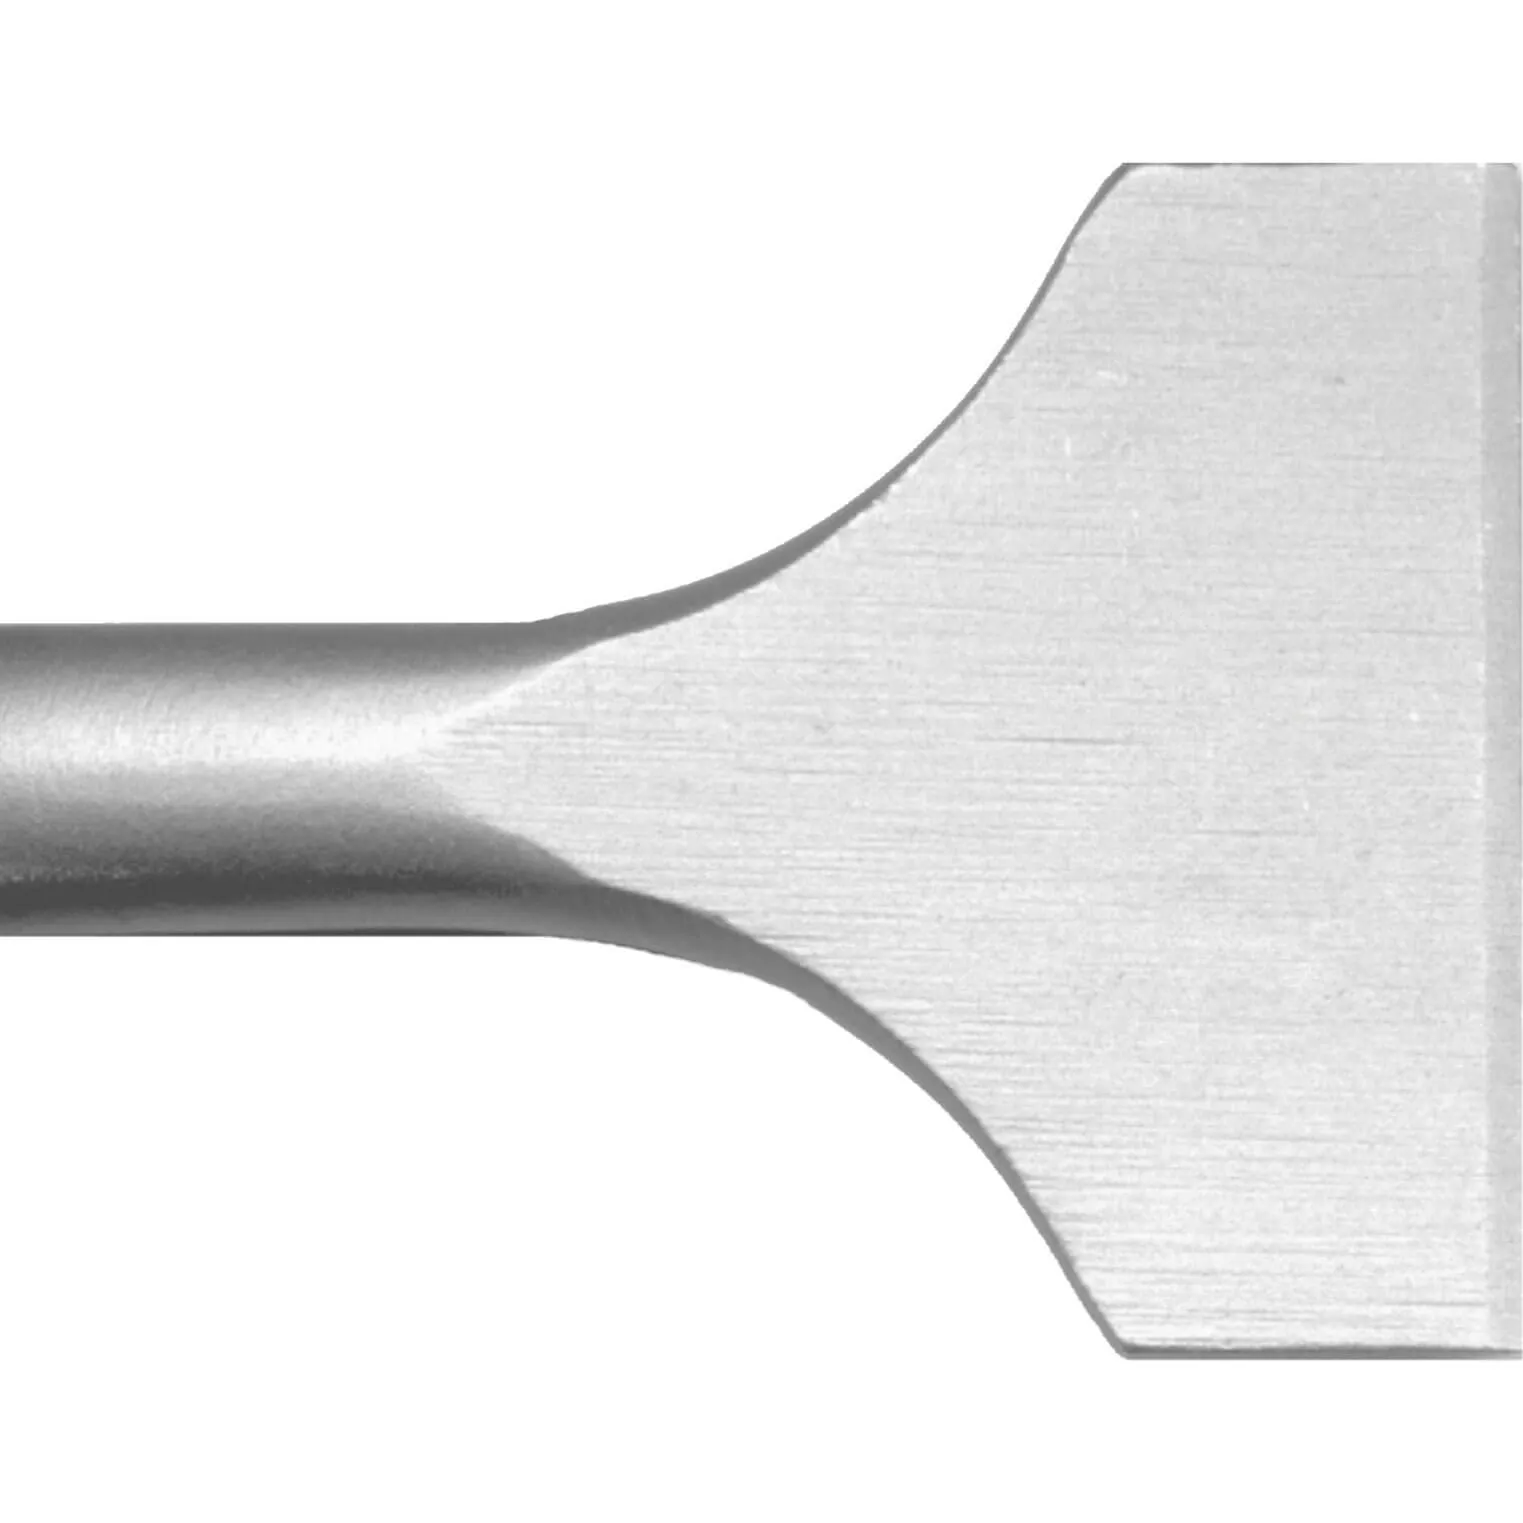 Irwin Speedhammer SDS Max Spade Chisel Bit - 80mm, 300mm